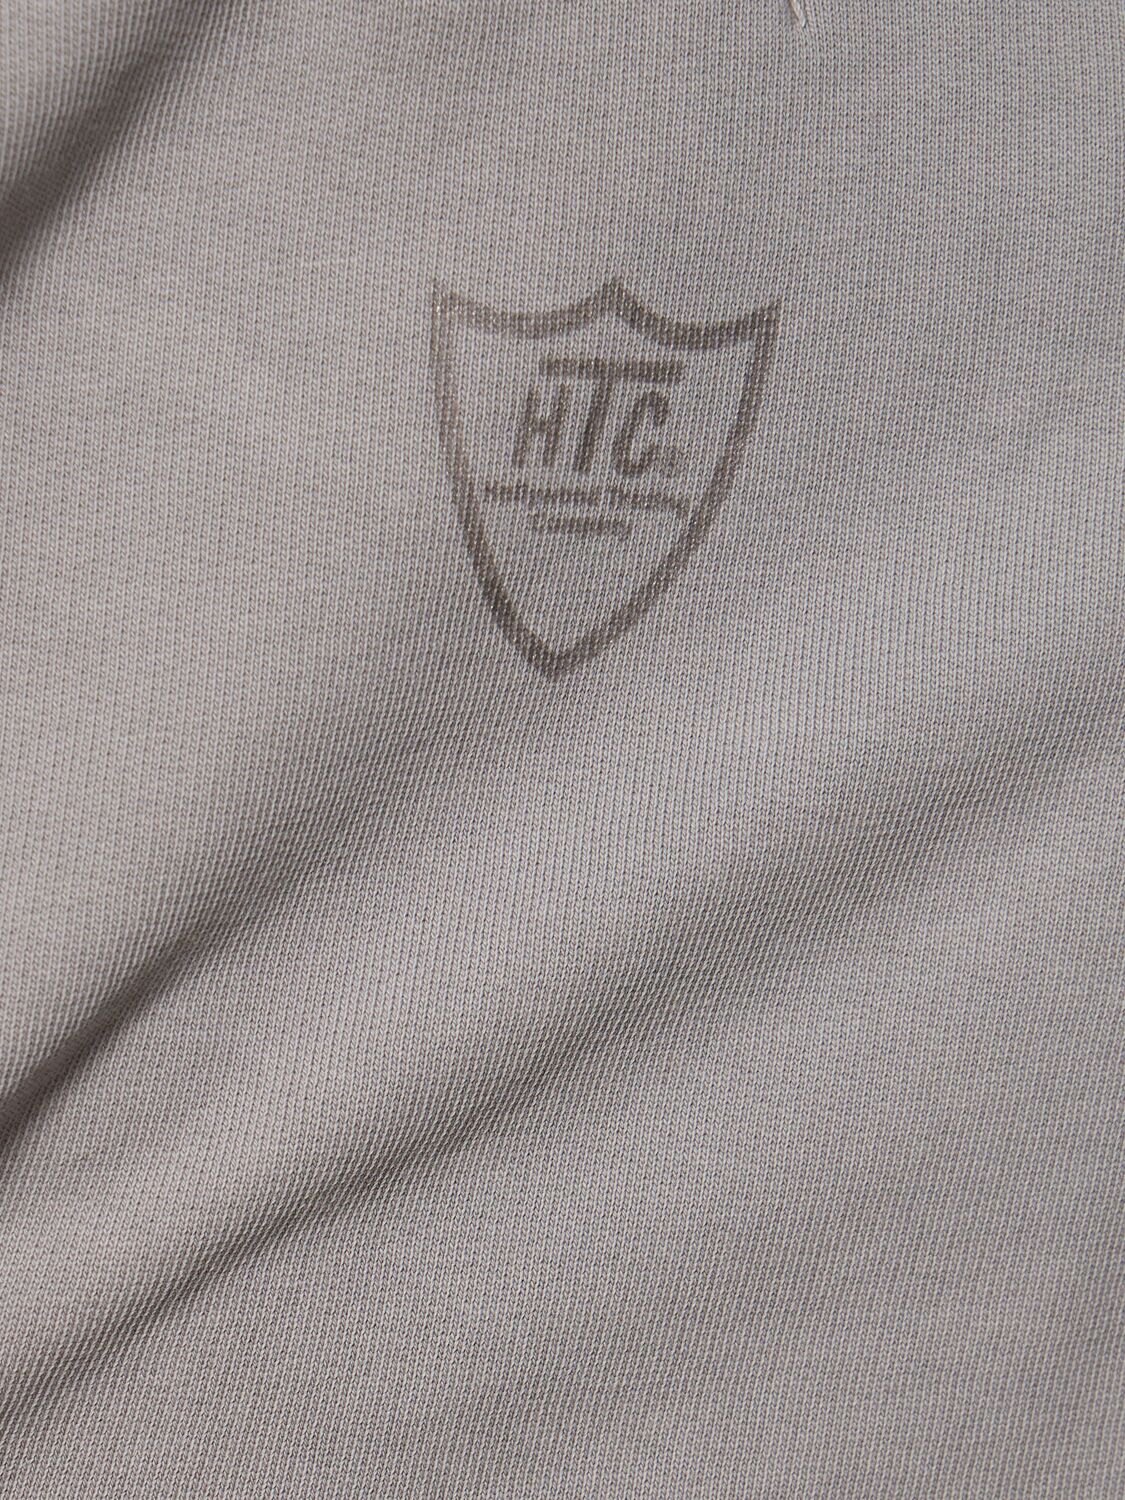 Shop Htc Los Angeles Small Logo Cotton Crewneck Sweatshirt In Light Grey